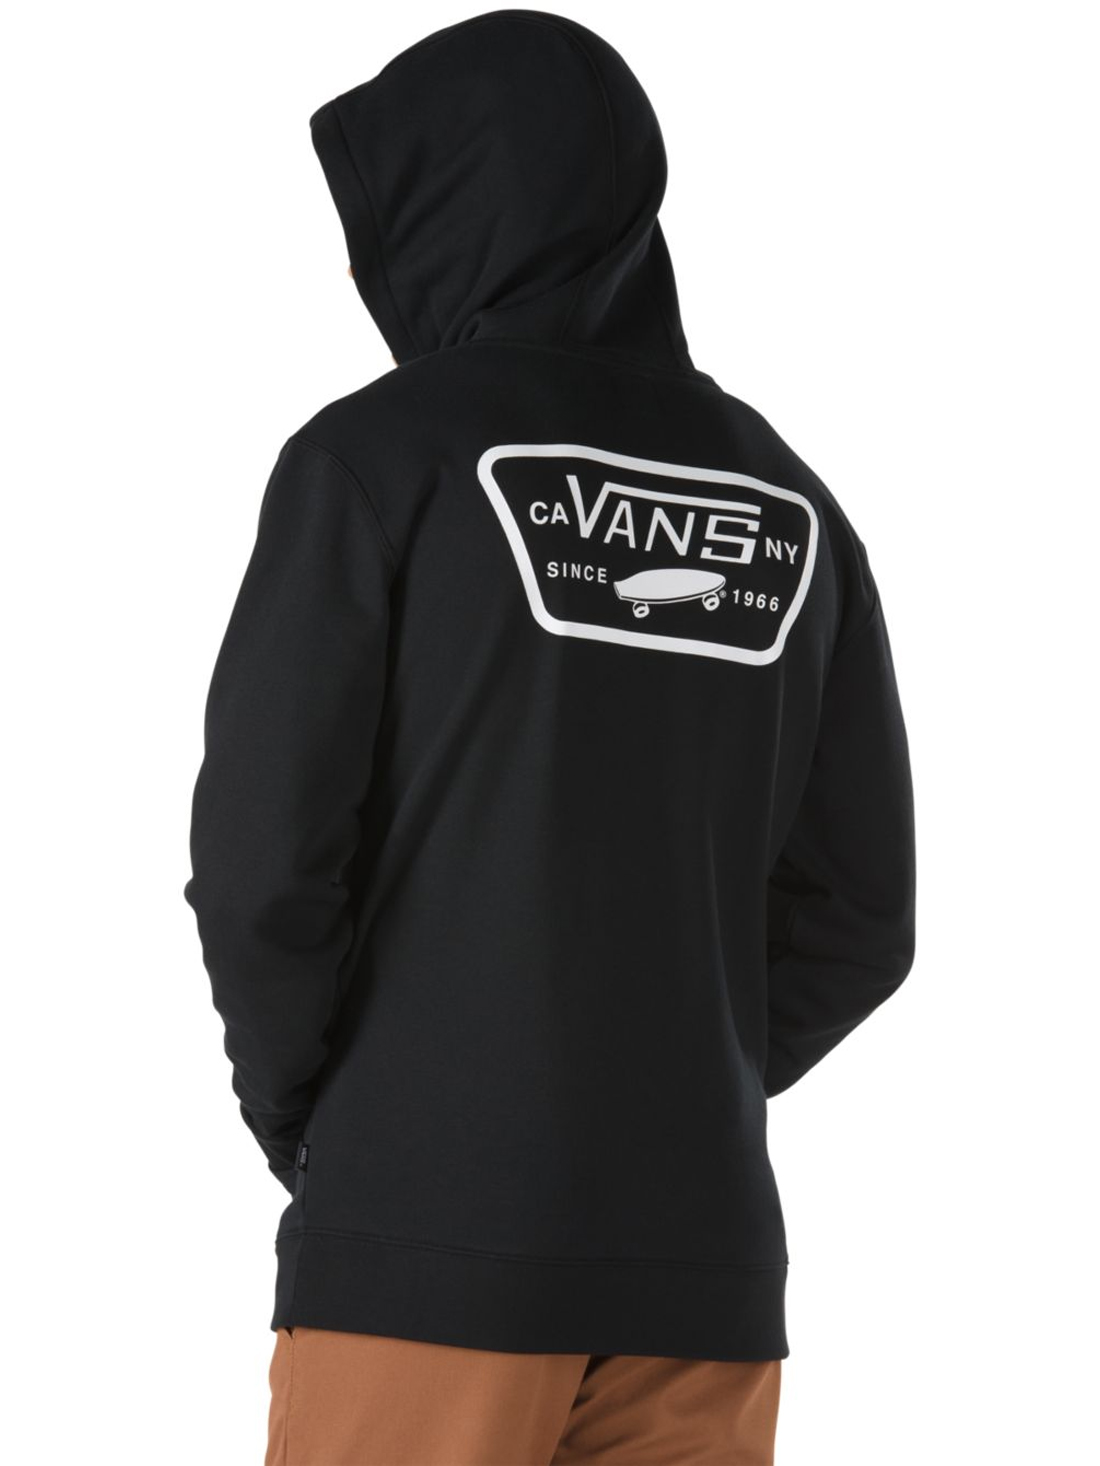 vans hoodie black